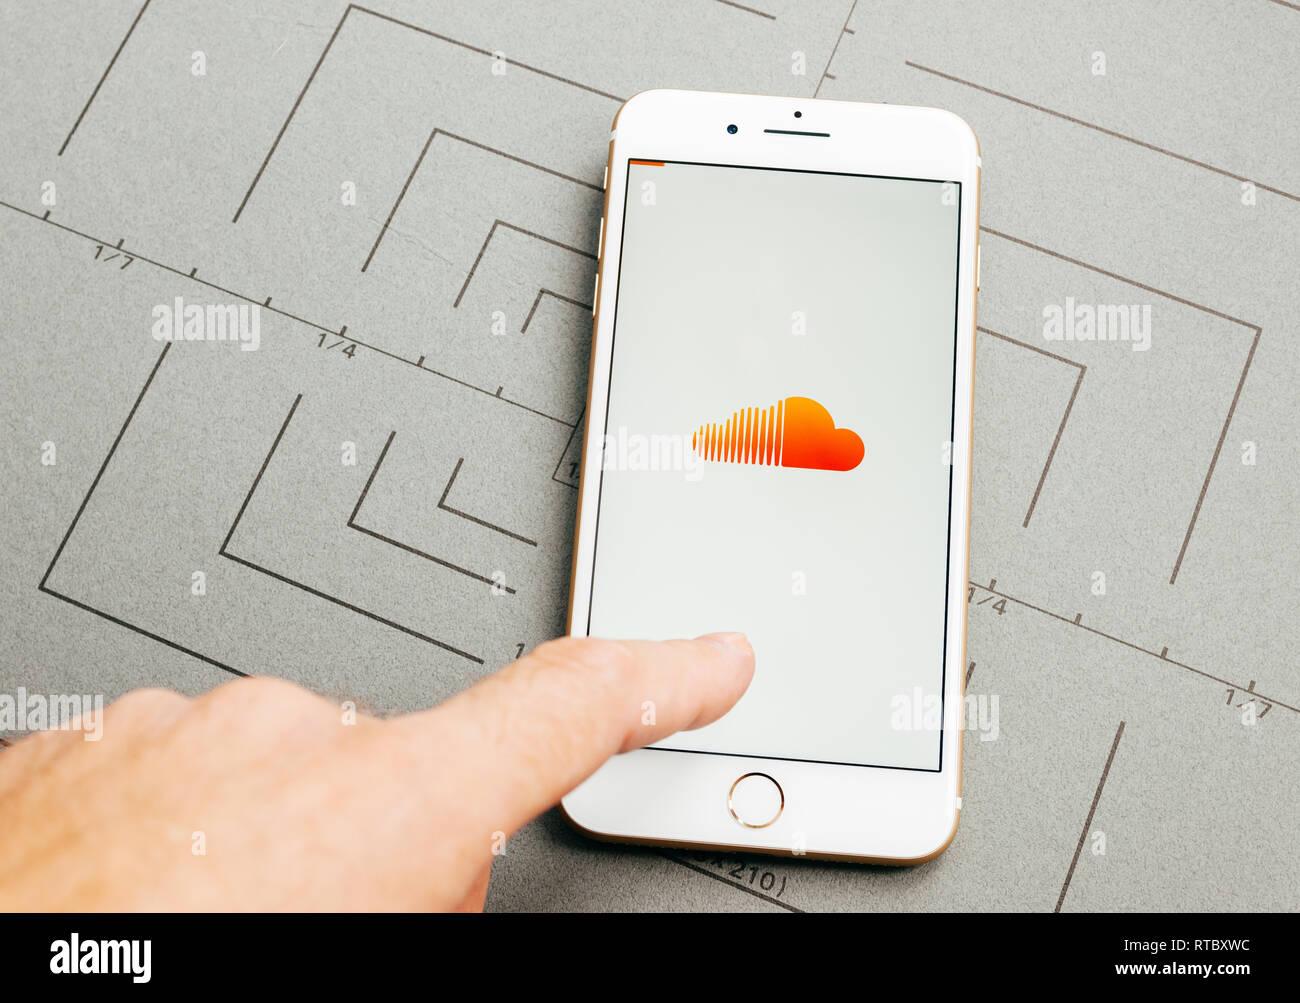 Parigi, Francia - Sep 26, 2016: Maschio mano azienda nuovo Apple iPhone 7 Plus dopo unboxing e test installando l'applicazione software applicativo SoundCloud app Musica login Foto Stock